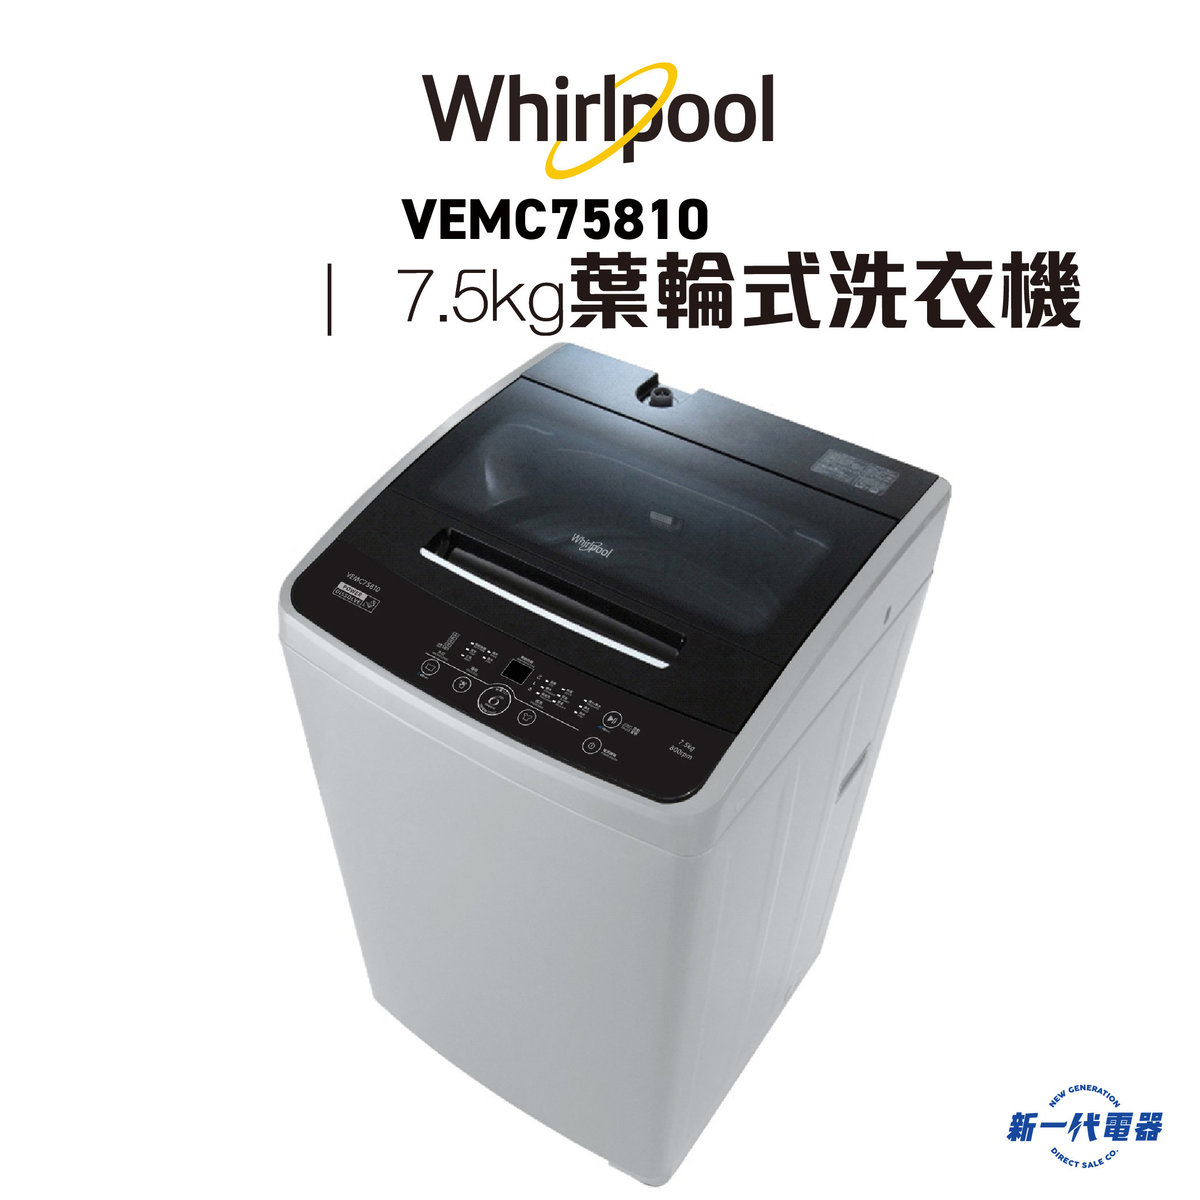 VEMC75810  -7.5KG, 800轉/分鐘 即溶淨葉輪式洗衣機,